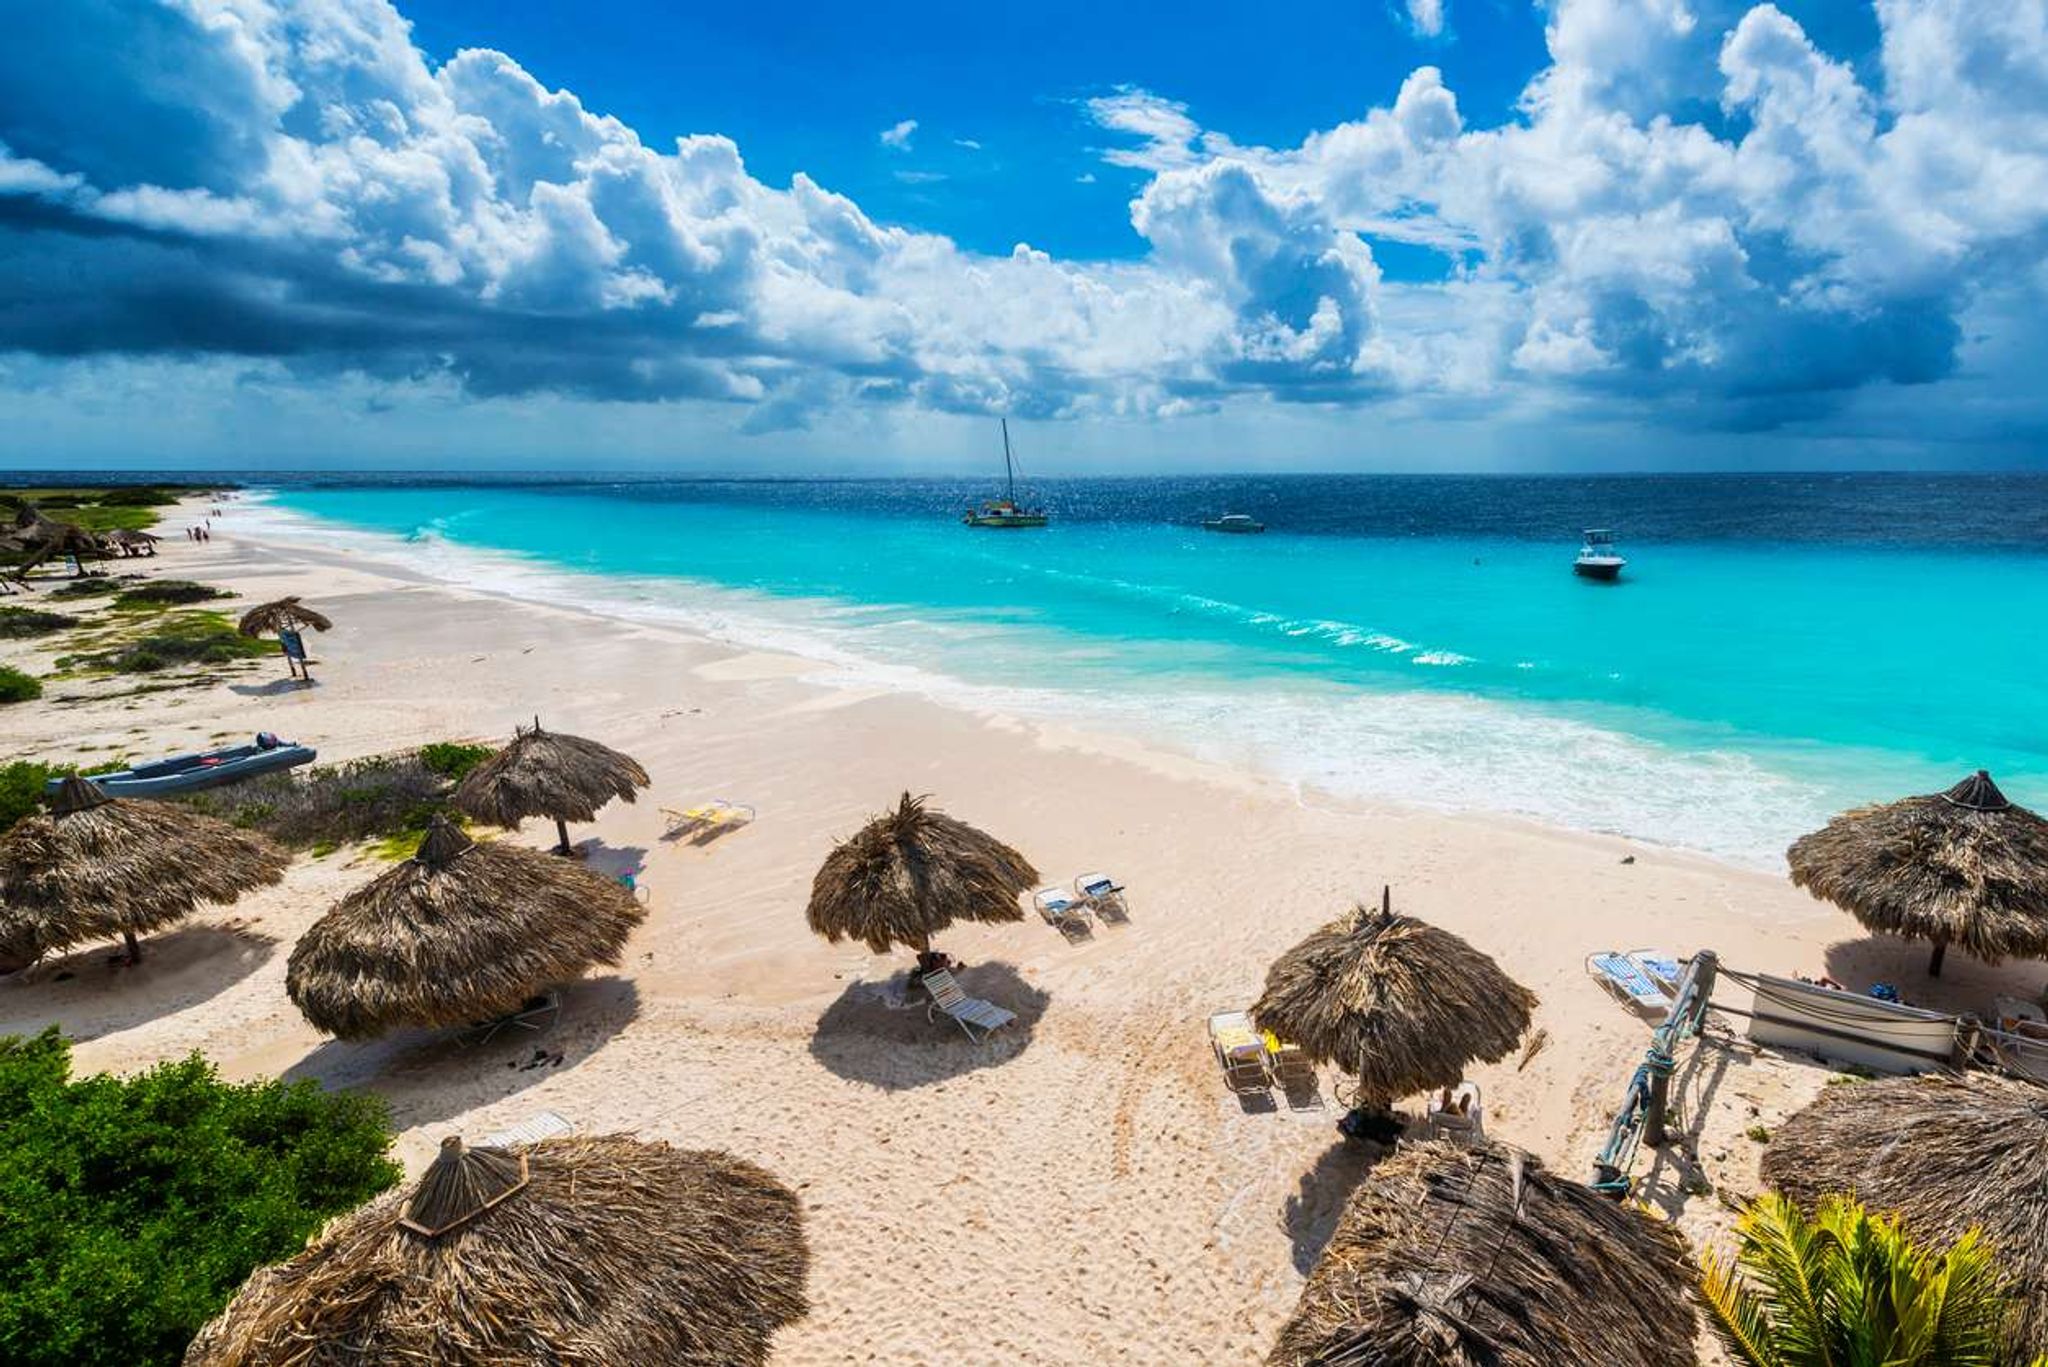 Vakantie in Curacao